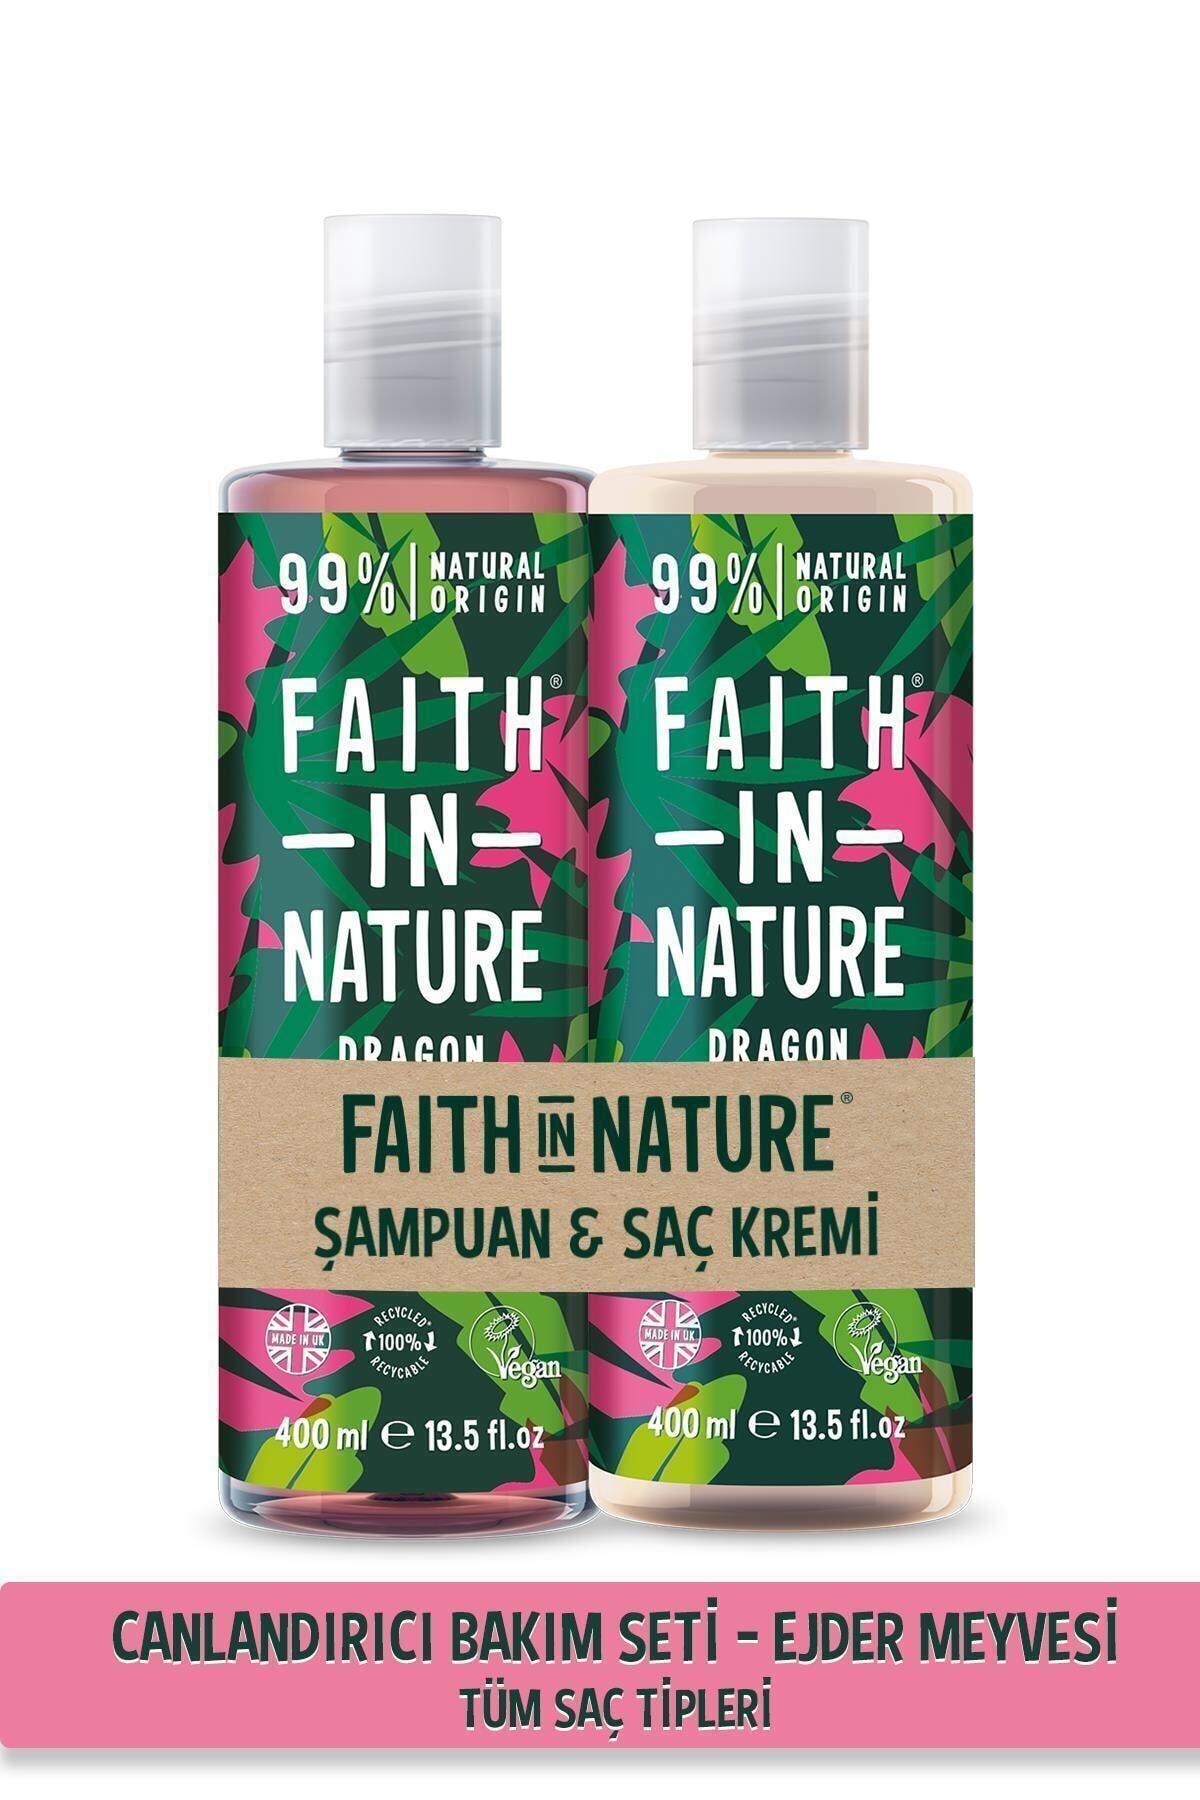 Faith In Nature %99 Doğal Canlandırıcı Şampuan&Saç Kremi Ejder Meyvesi